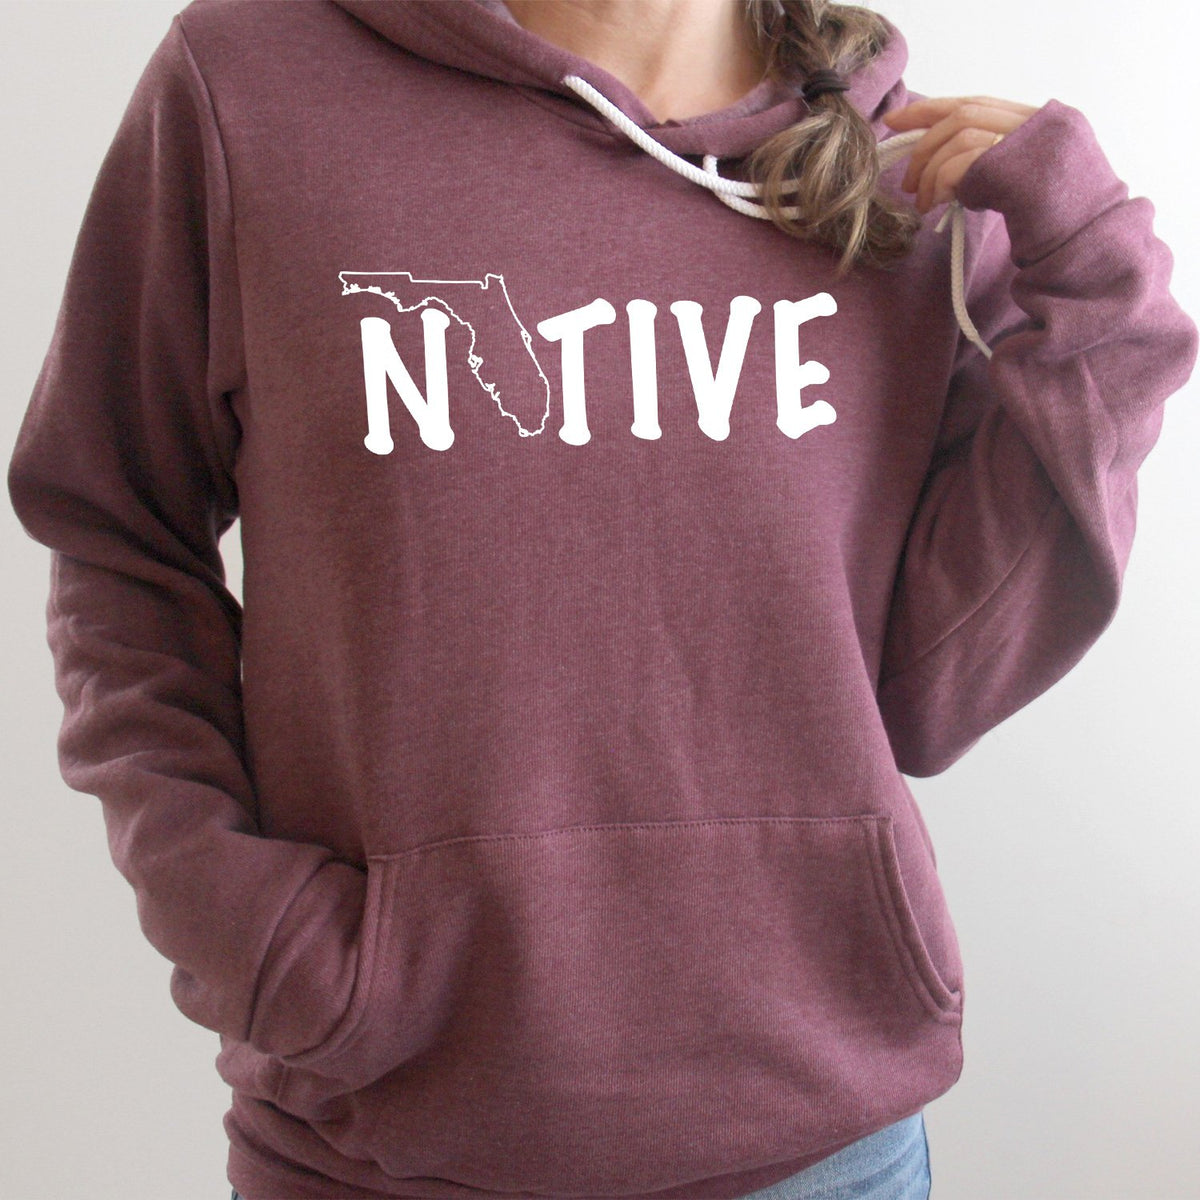 FL Native - Hoodie Sweatshirt